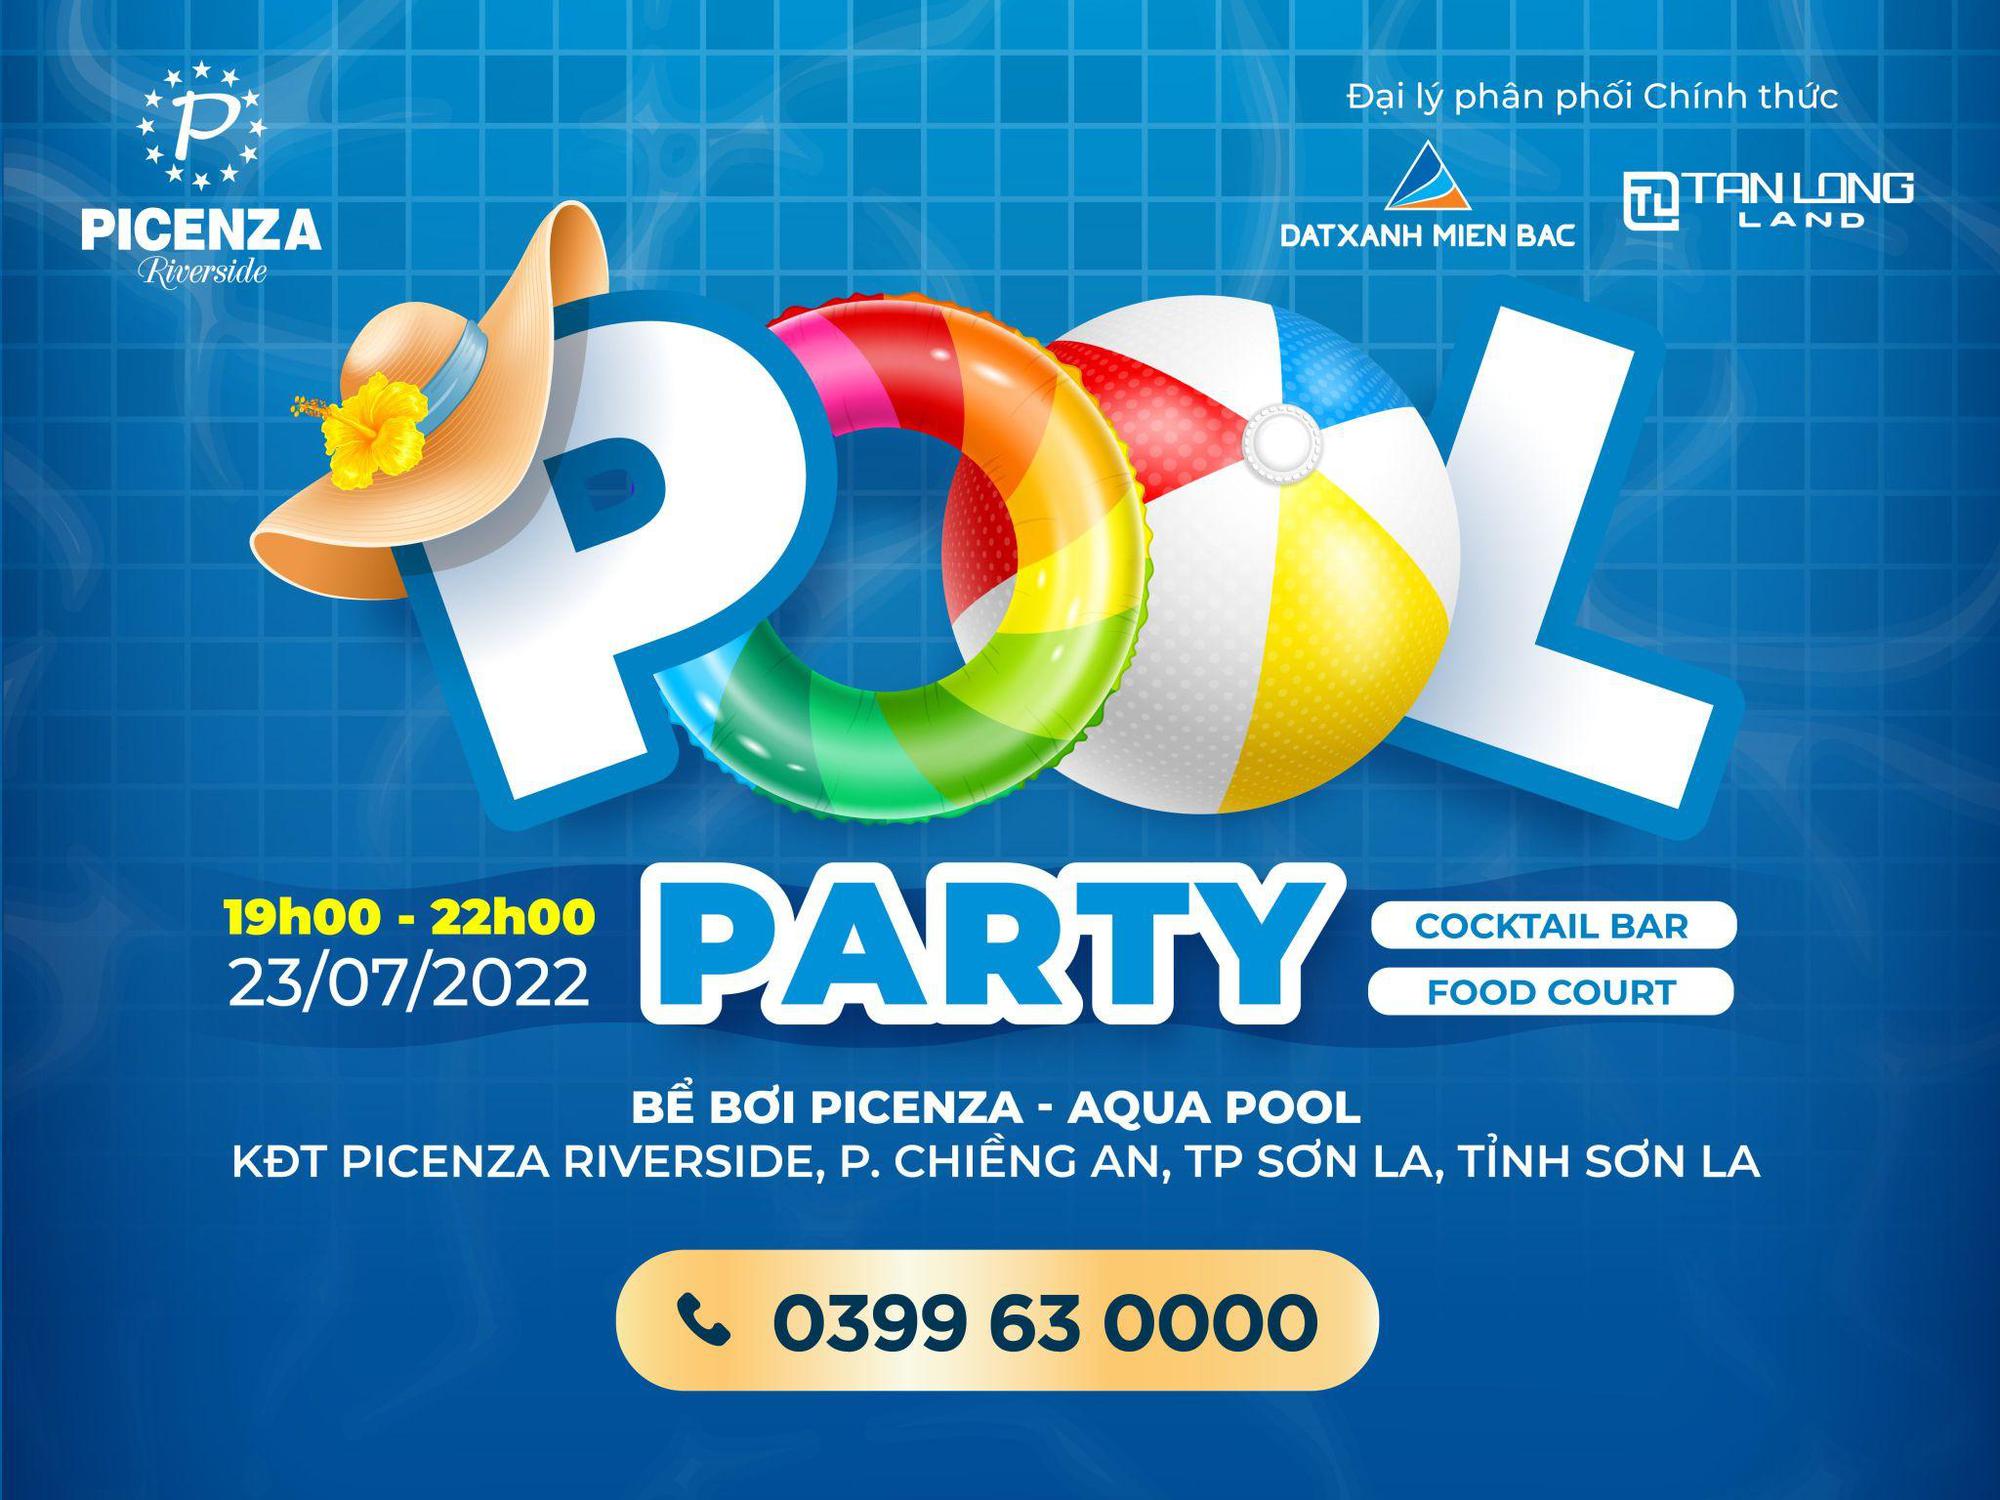 Picenza Riverside khánh thành bể bơi Aqua Pool đẳng cấp bậc nhất Sơn La với loạt sự kiện sôi động trong 2 ngày 22 và 23/7/2022 - Ảnh 3.